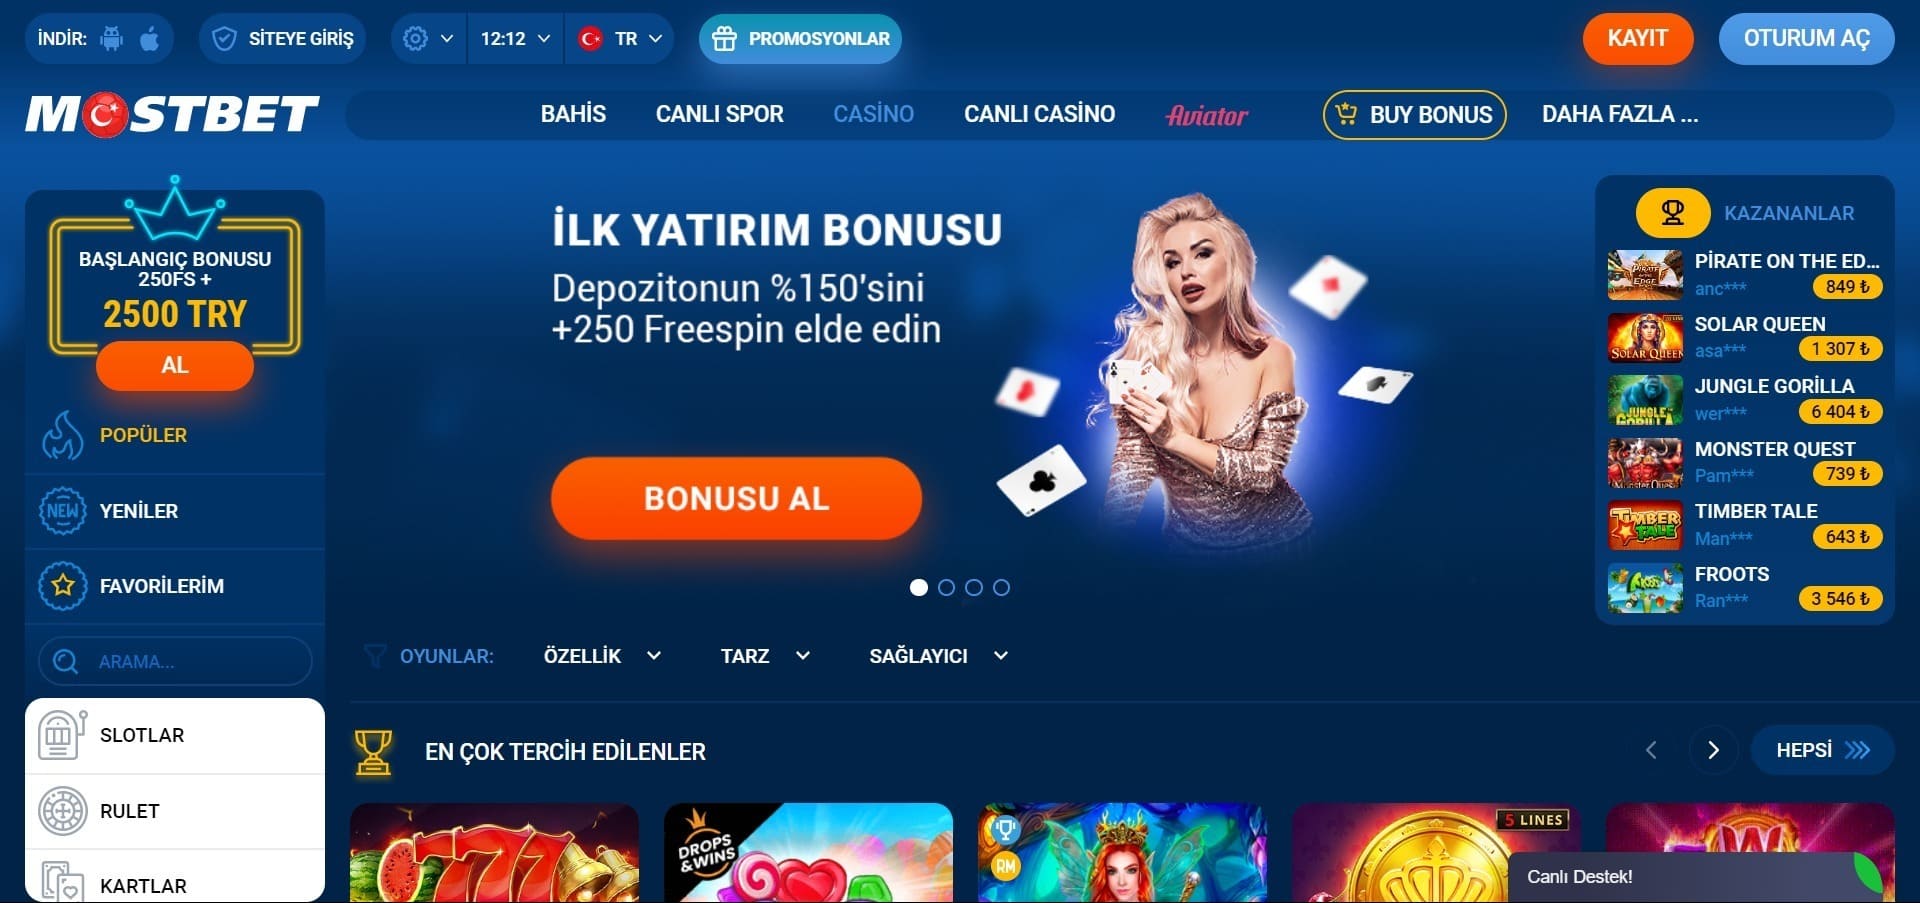 Online Casino mostbet turk oyunları oynayın